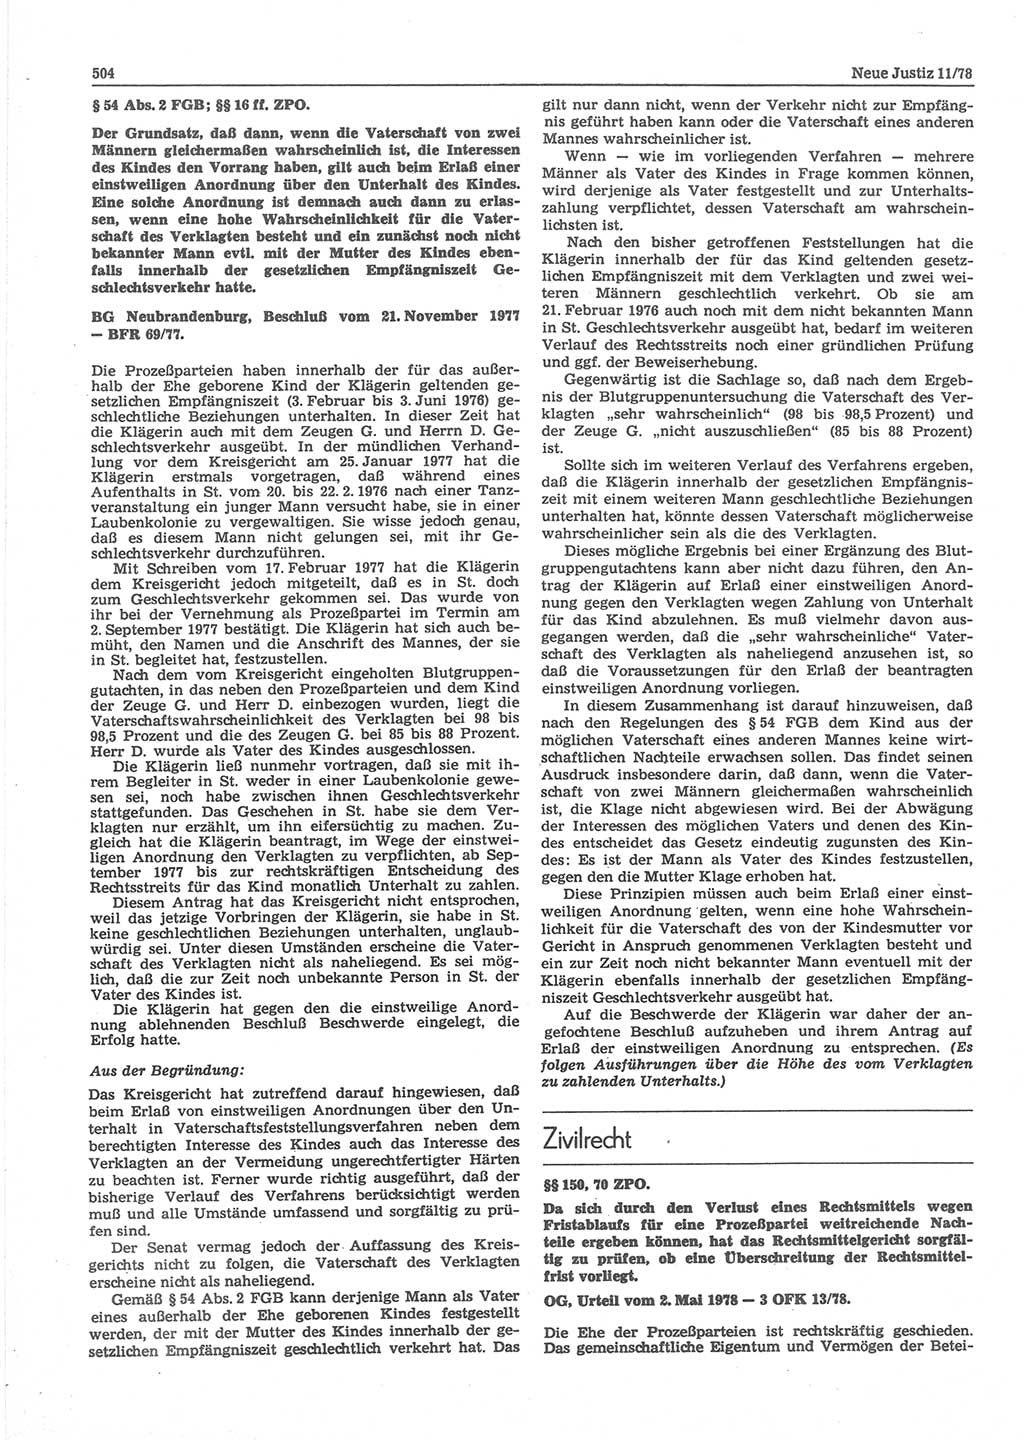 Neue Justiz (NJ), Zeitschrift für sozialistisches Recht und Gesetzlichkeit [Deutsche Demokratische Republik (DDR)], 32. Jahrgang 1978, Seite 504 (NJ DDR 1978, S. 504)